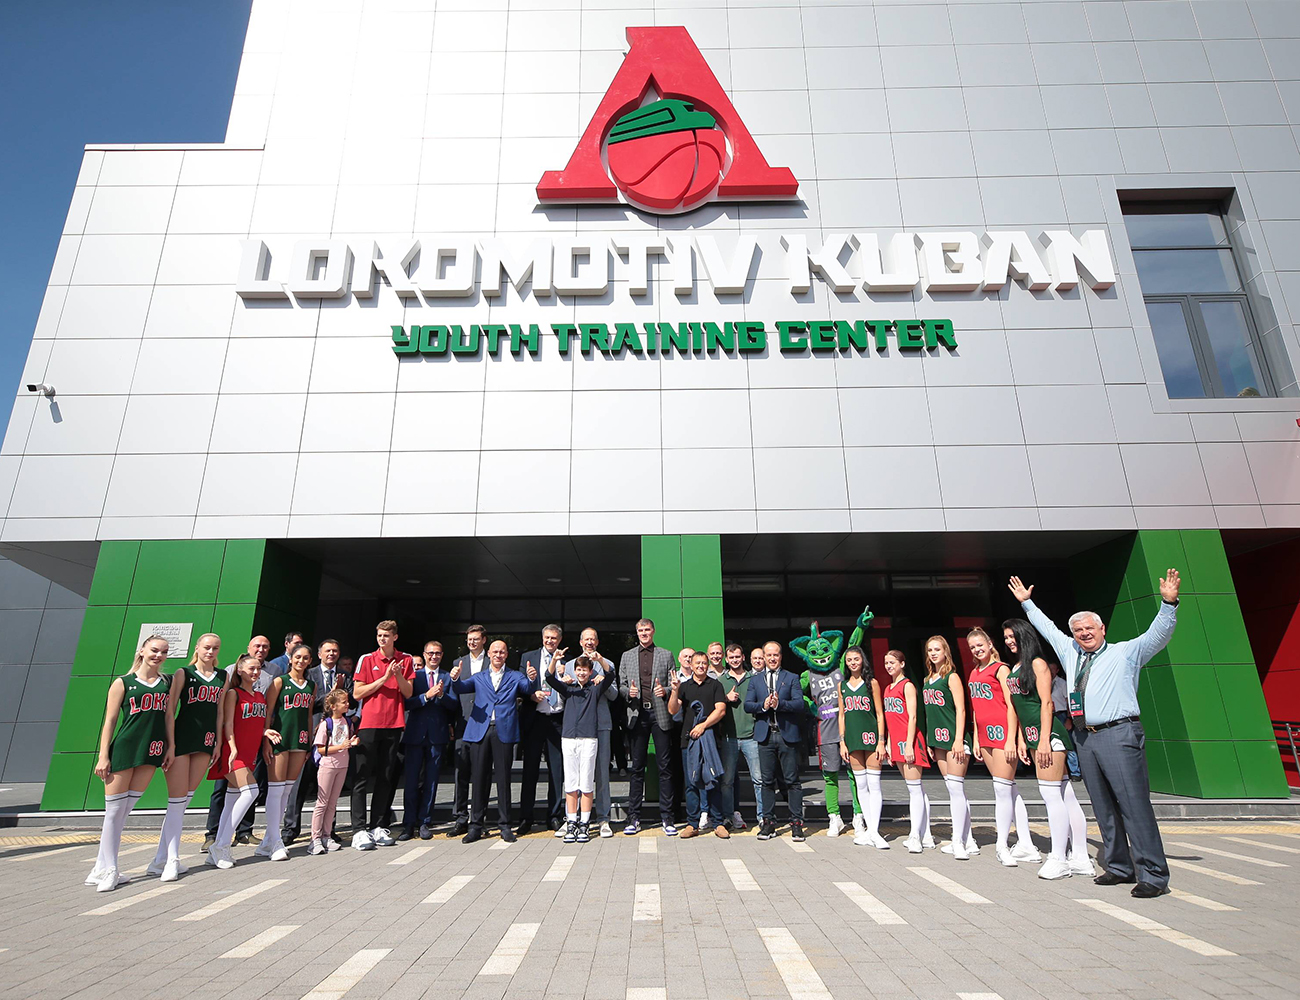 Lokomotiv-Kuban has opened Russia’s largest youth basketball training center